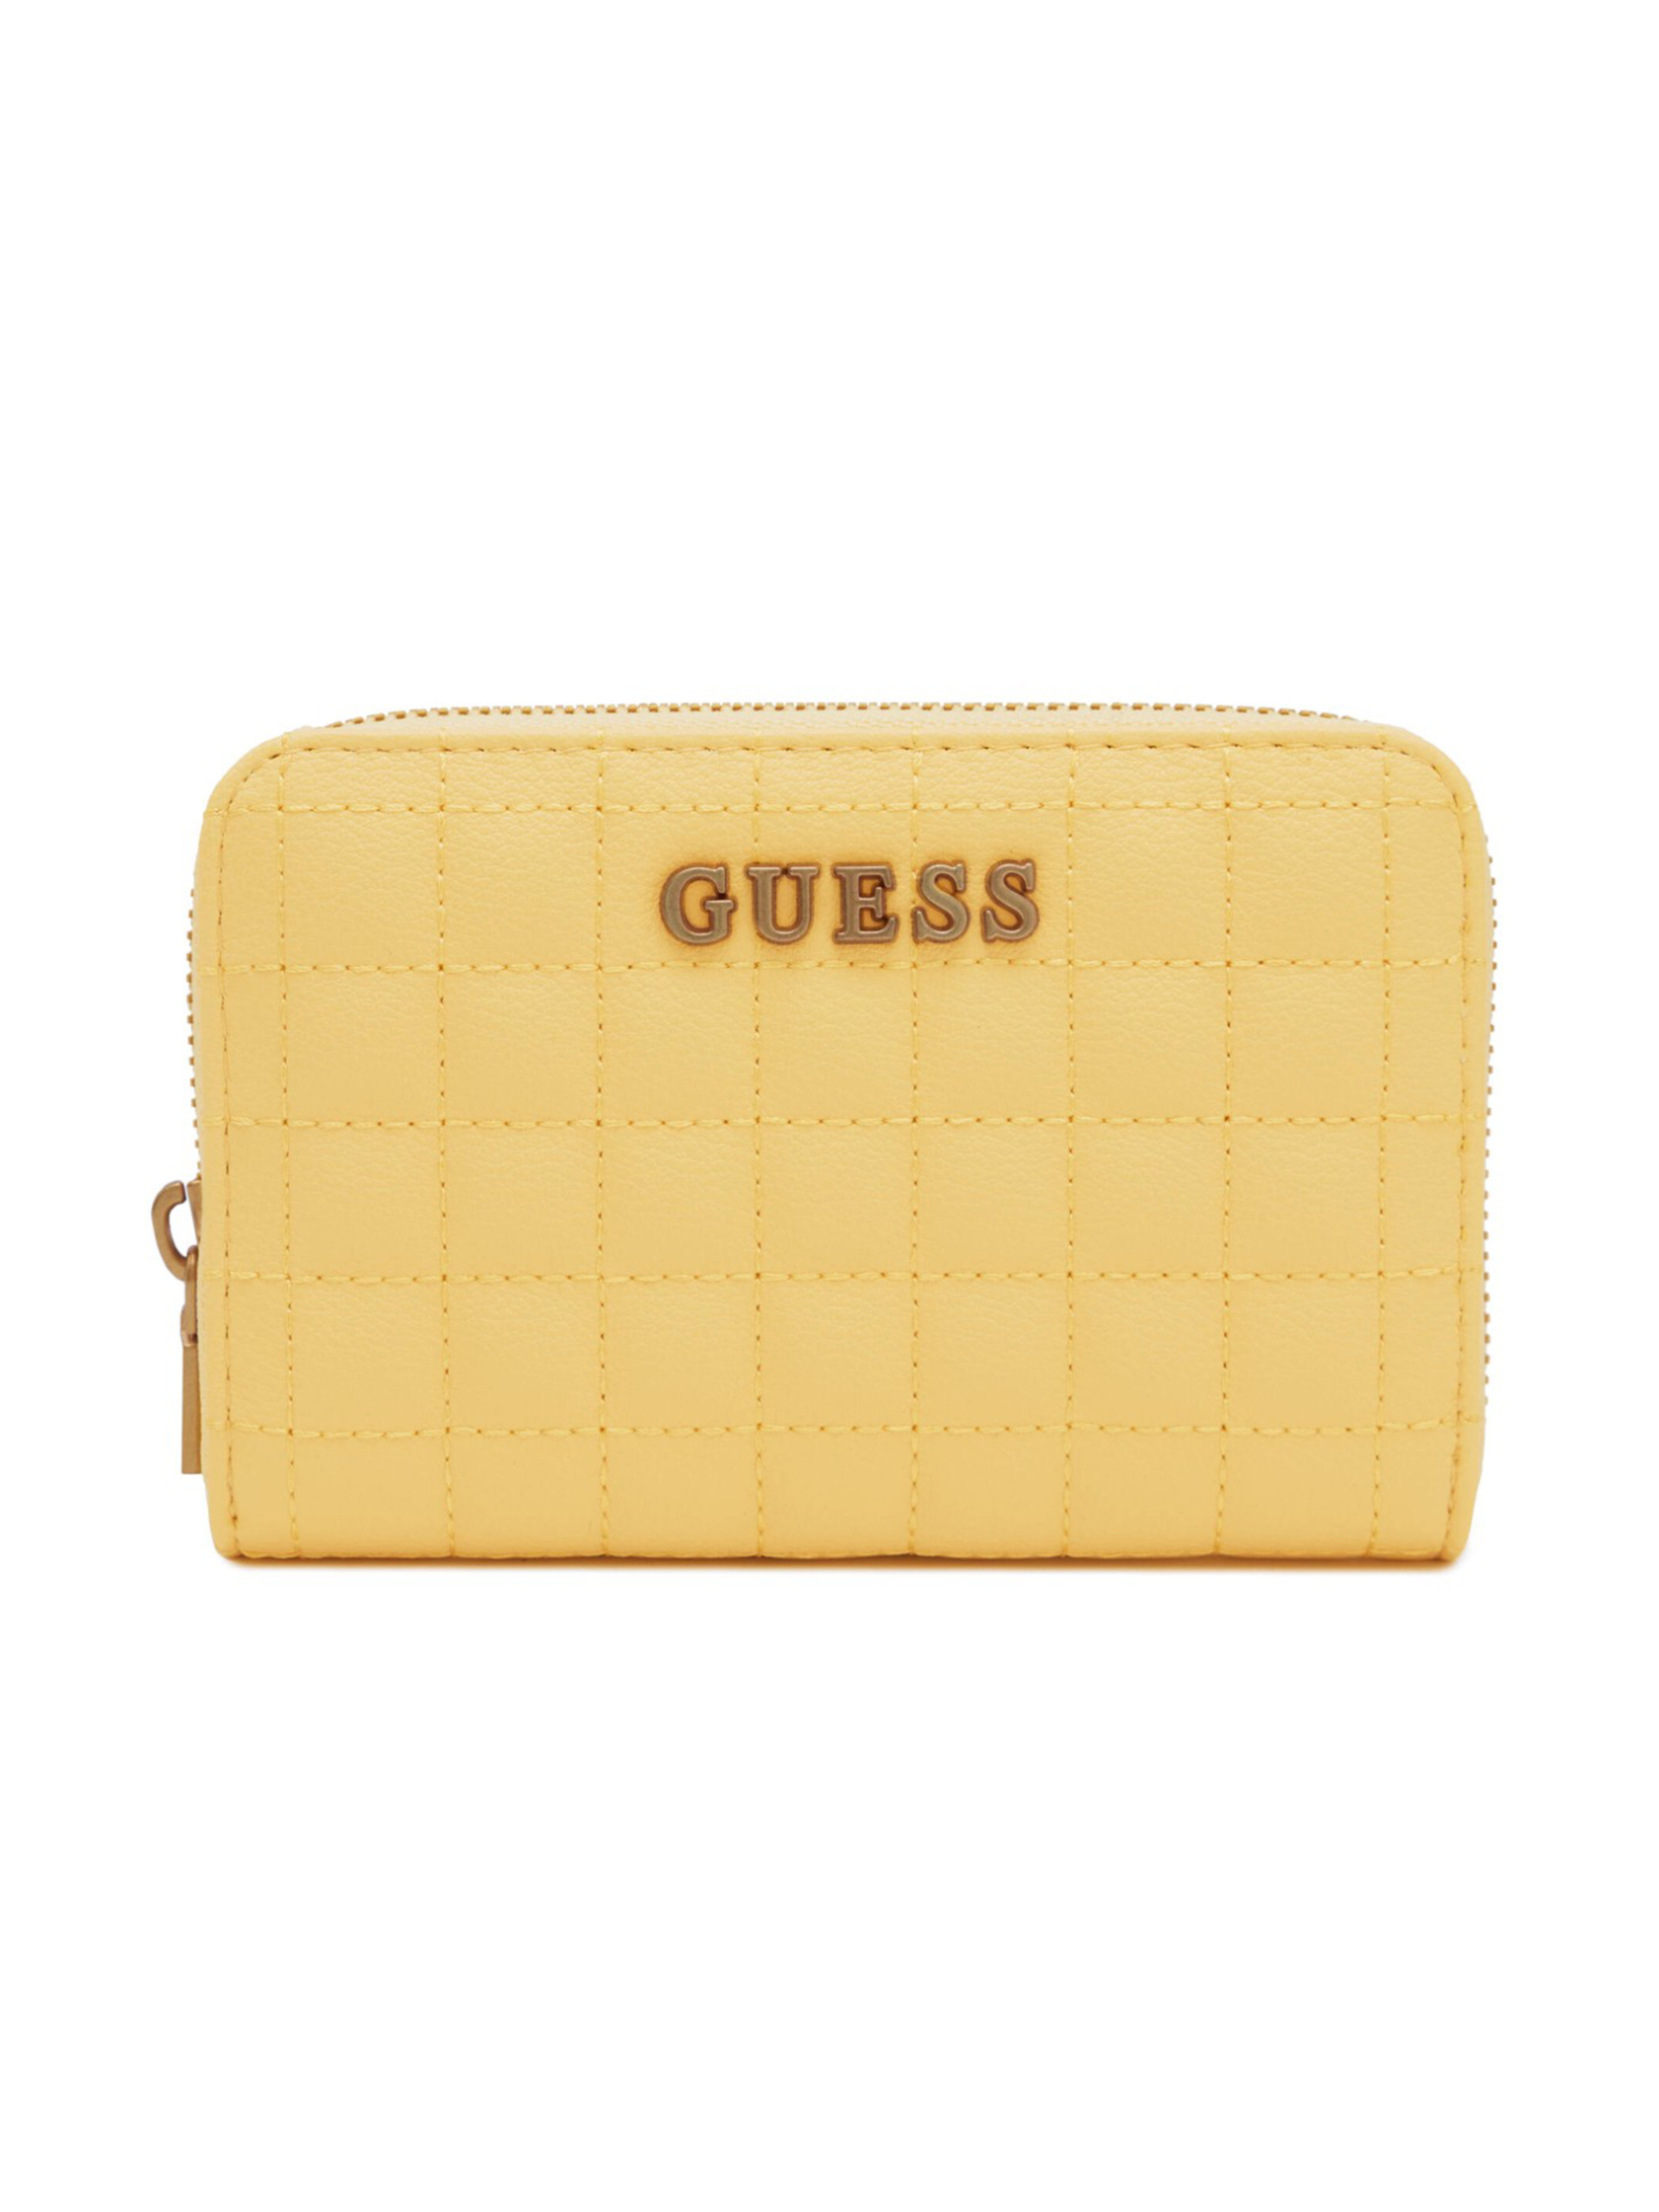 Guess dámská žlutá peněženka